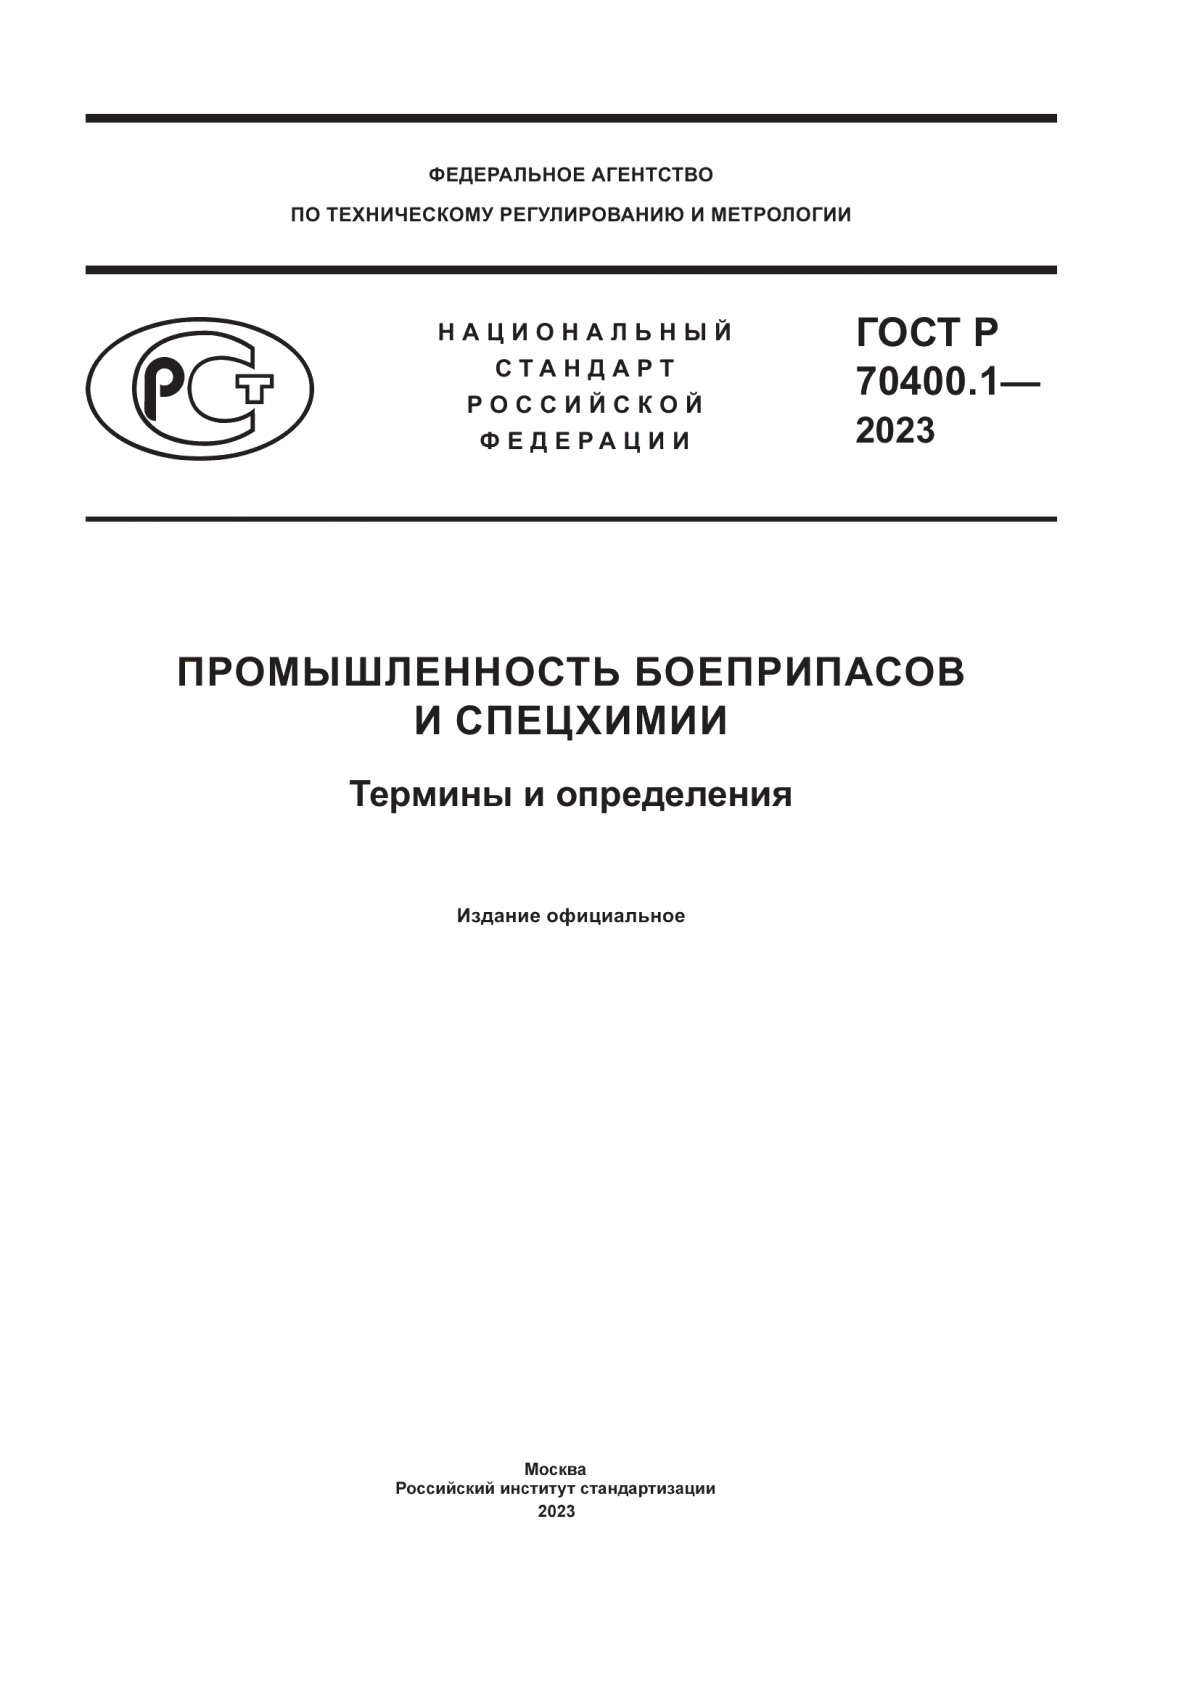 ГОСТ Р 70400.1-2023 Промышленность боеприпасов и спецхимии. Термины и определения